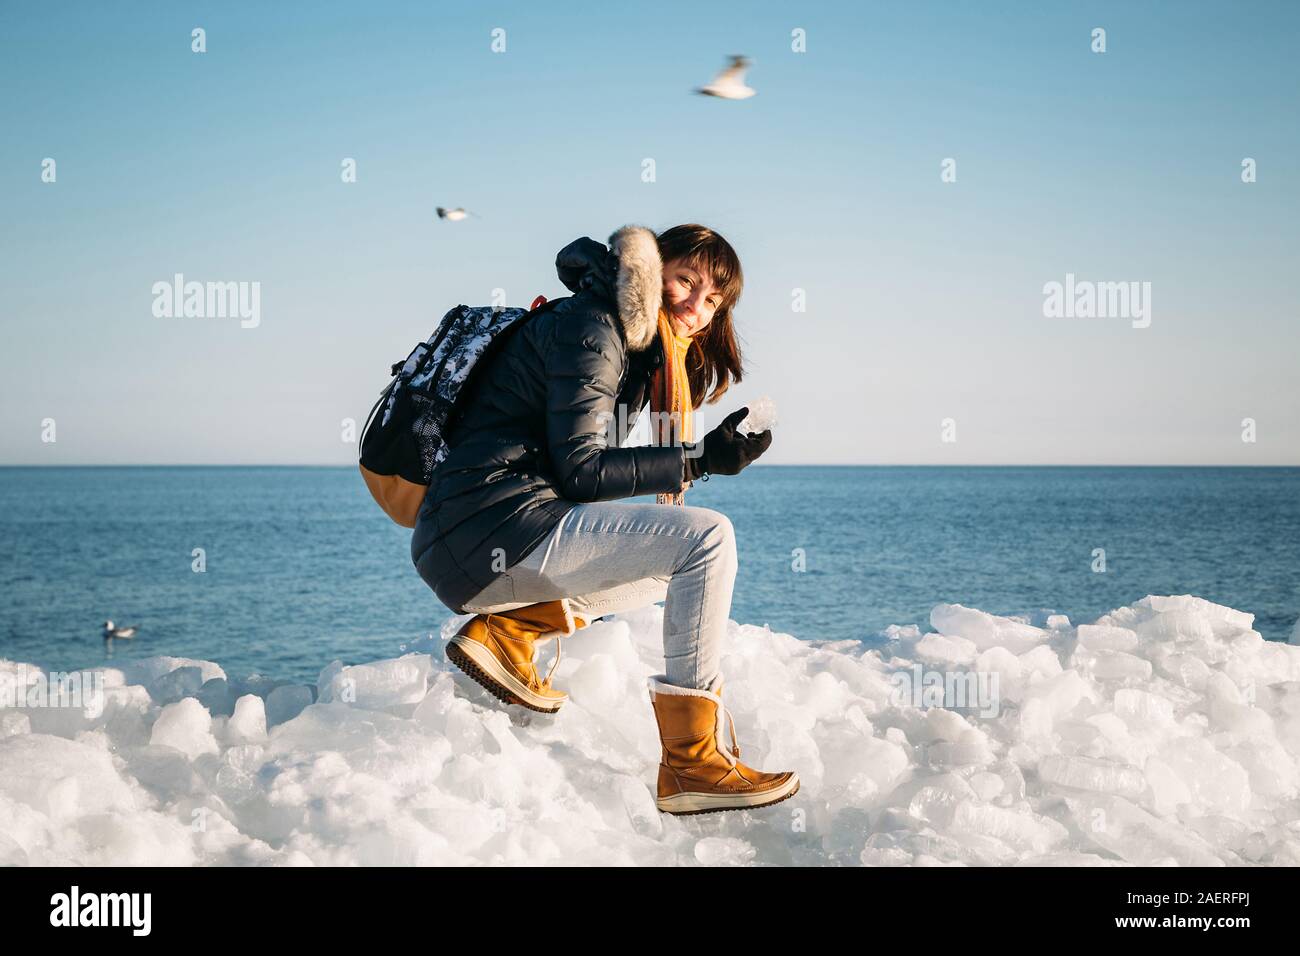 Mujer sonriente joven sentado en la parte superior de los bloques de hielo marino en la costa sujetando la pieza rota de hielo, con un mar azul y el cielo y el fondo. Foto de stock